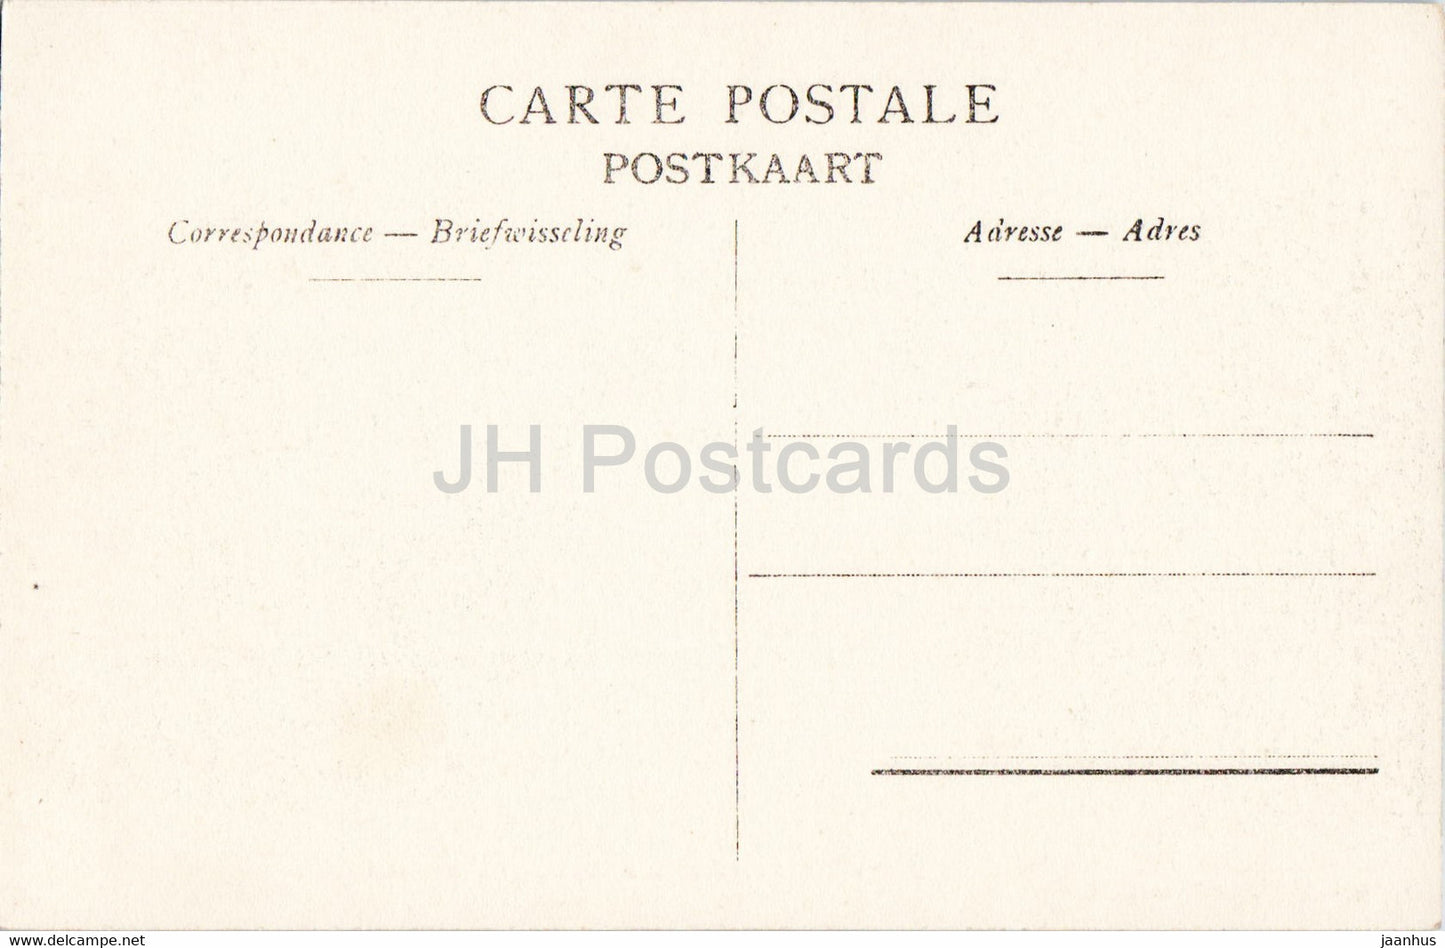 Anvers - Anvers - Vue a vol d'oiseau de l'Avenue De Keyser - tram - 454 - carte postale ancienne - Belgique - inutilisée